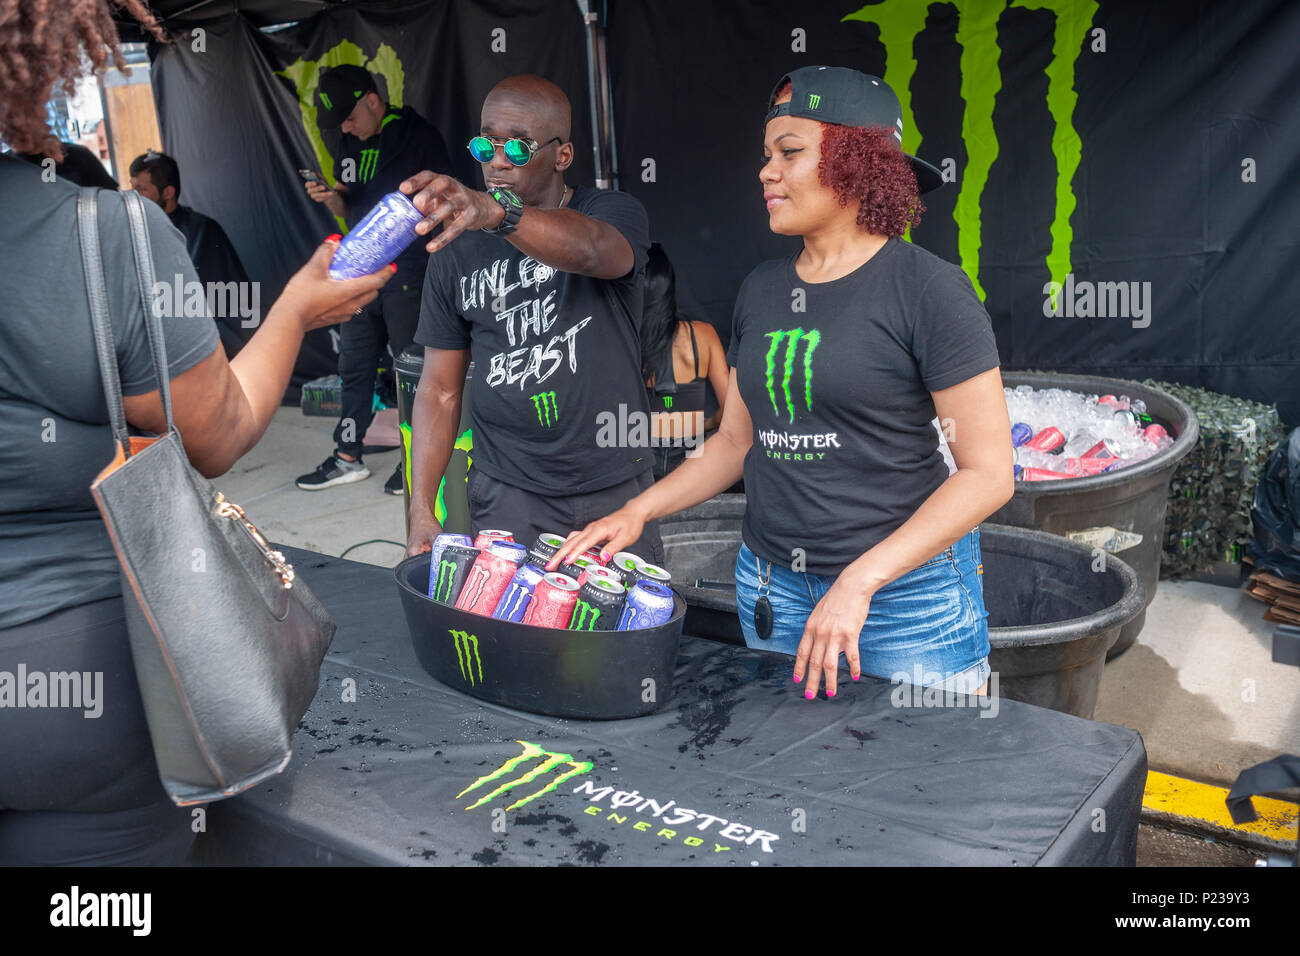 Distribuer gratuitement des échantillons de travailleurs de la marque Monster  energy drinks lors d'une foire de rue de Brooklyn à New York le samedi,  Juin 2, 2018. (© Richard B. Levine Photo